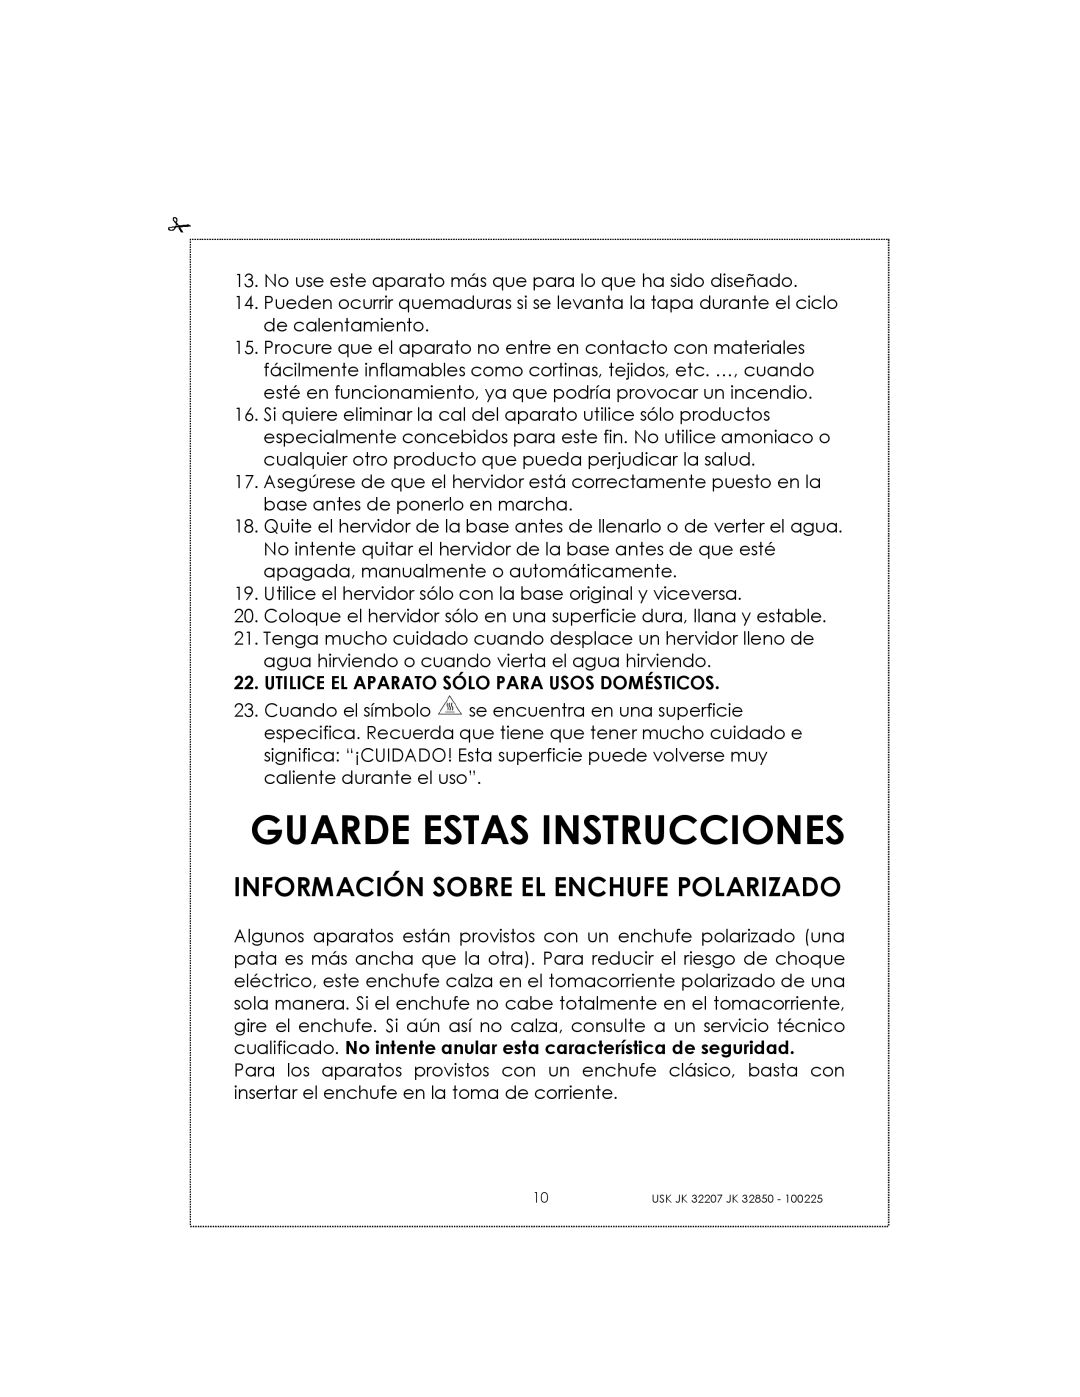 Kalorik USK JK 32850, USK JK 32207 manual Guarde Estas Instrucciones, Información Sobre El Enchufe Polarizado 